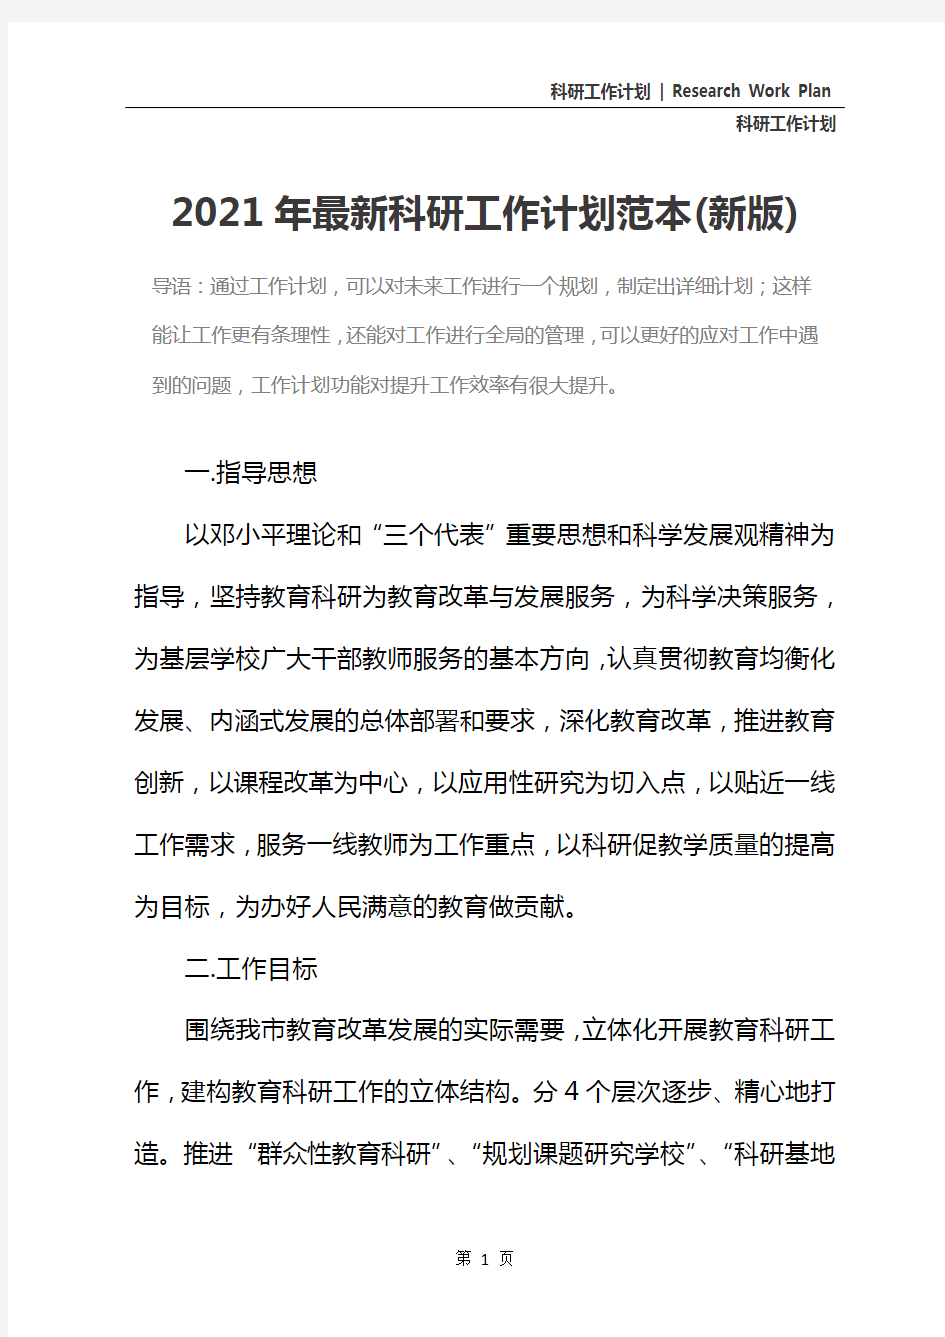 2021年最新科研工作计划范本(新版)